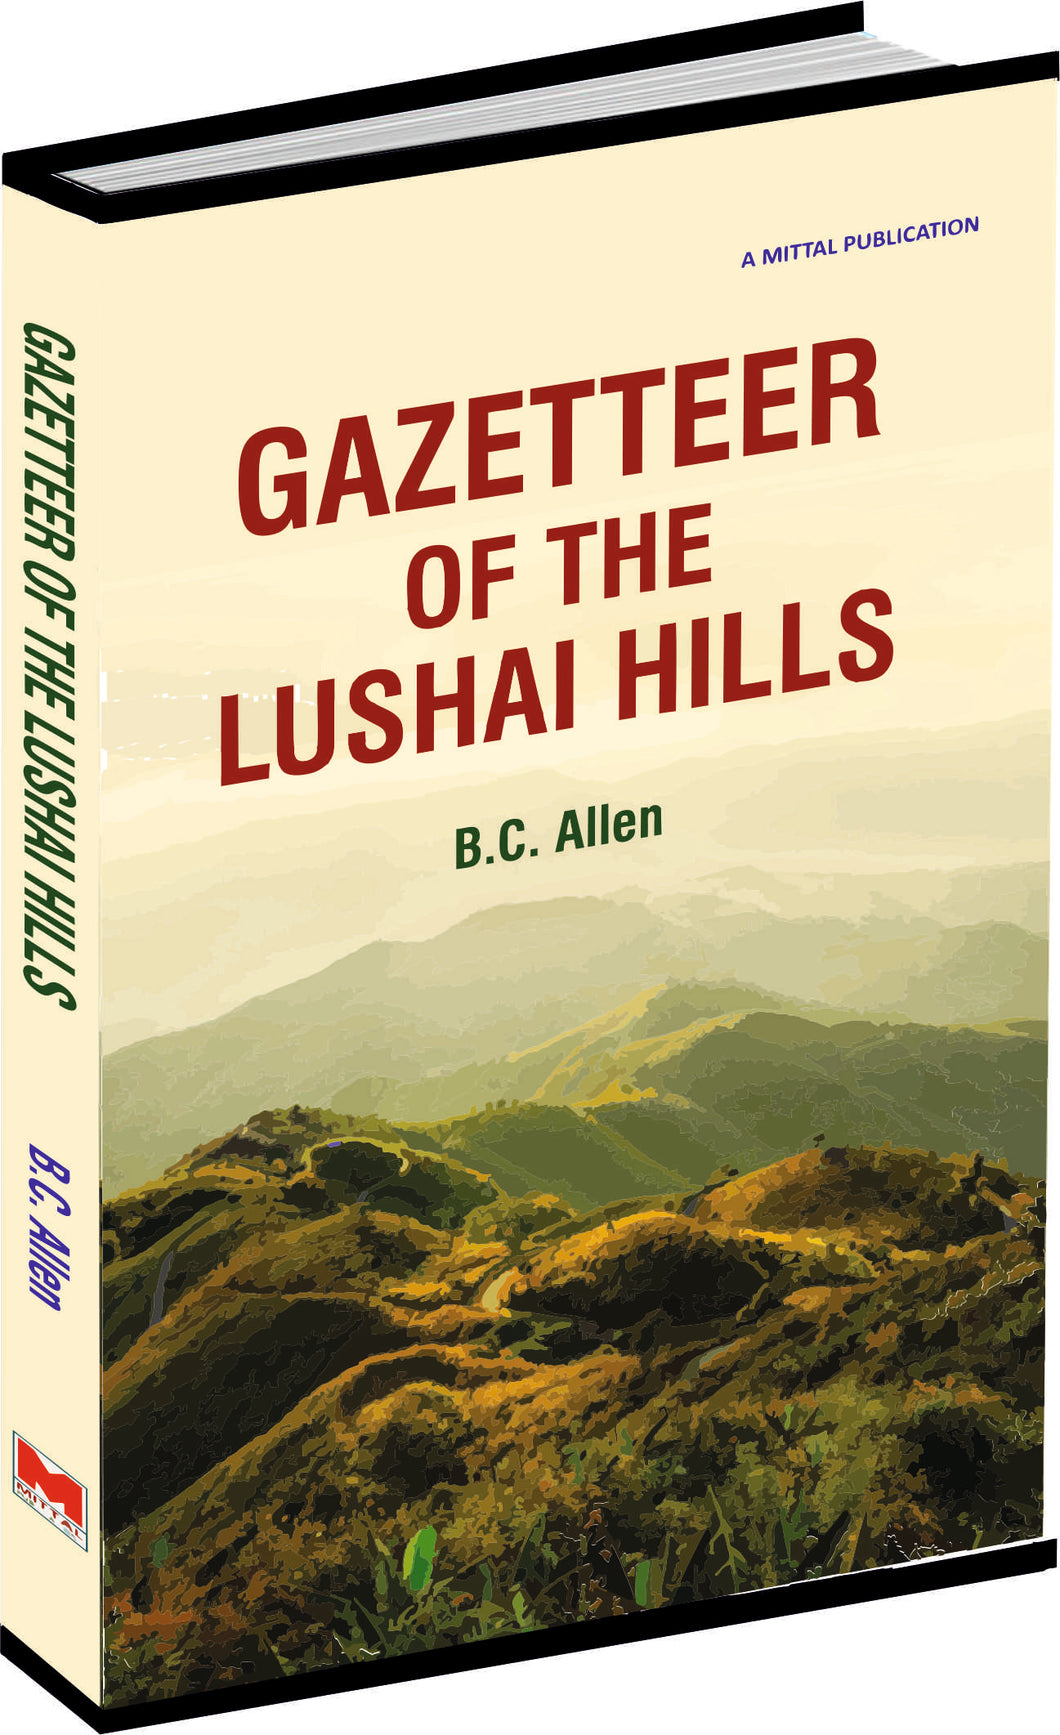 Gazetteer of the Lushai Hills by B.C. Allen